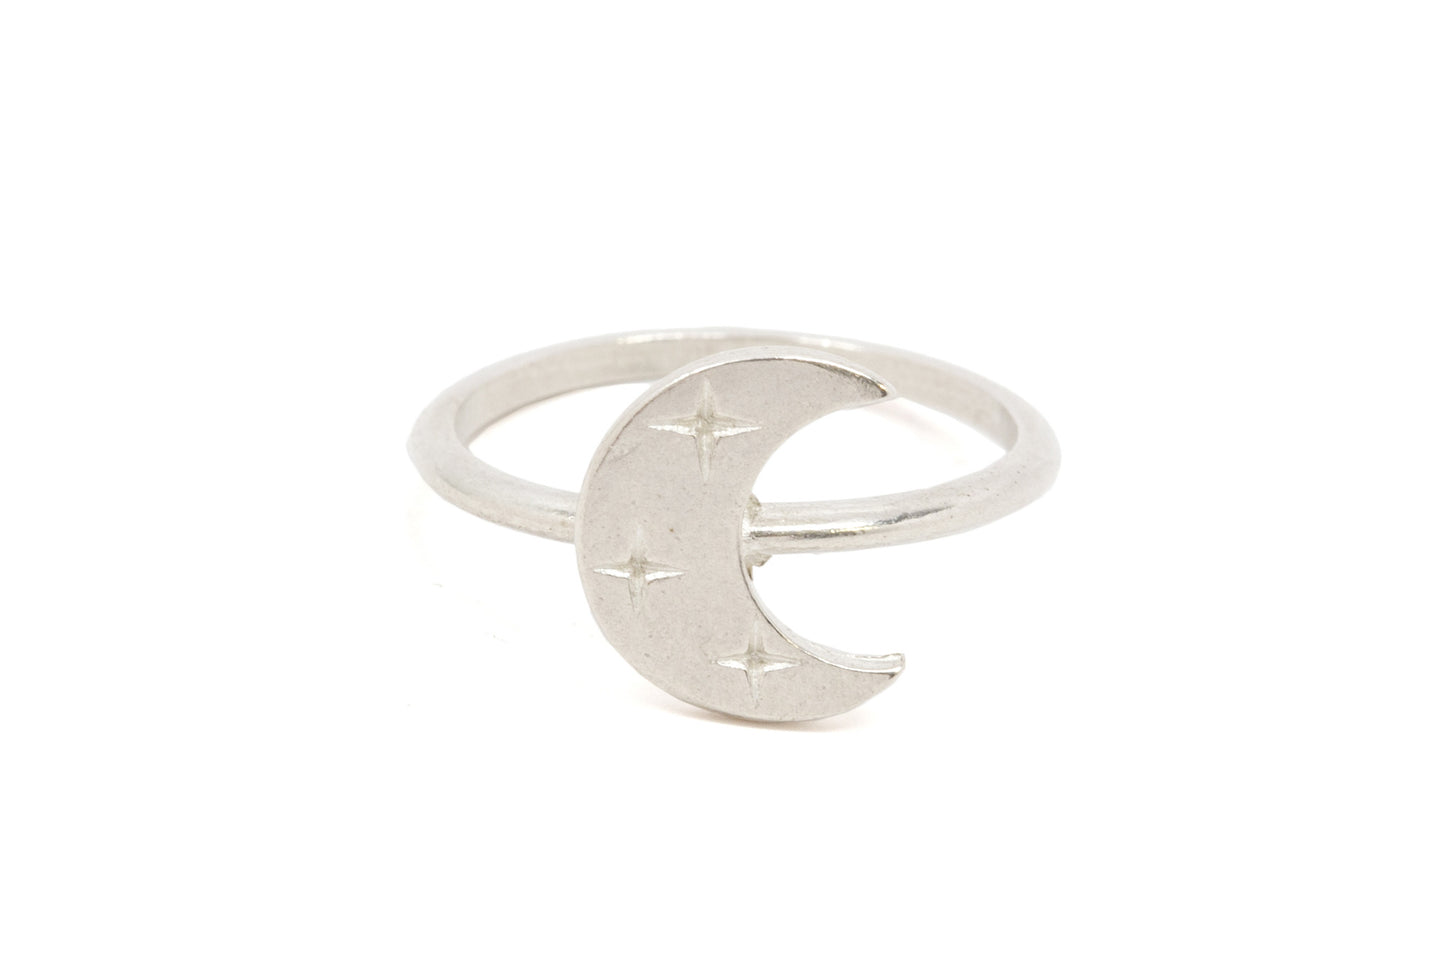 Artemis Moon Ring